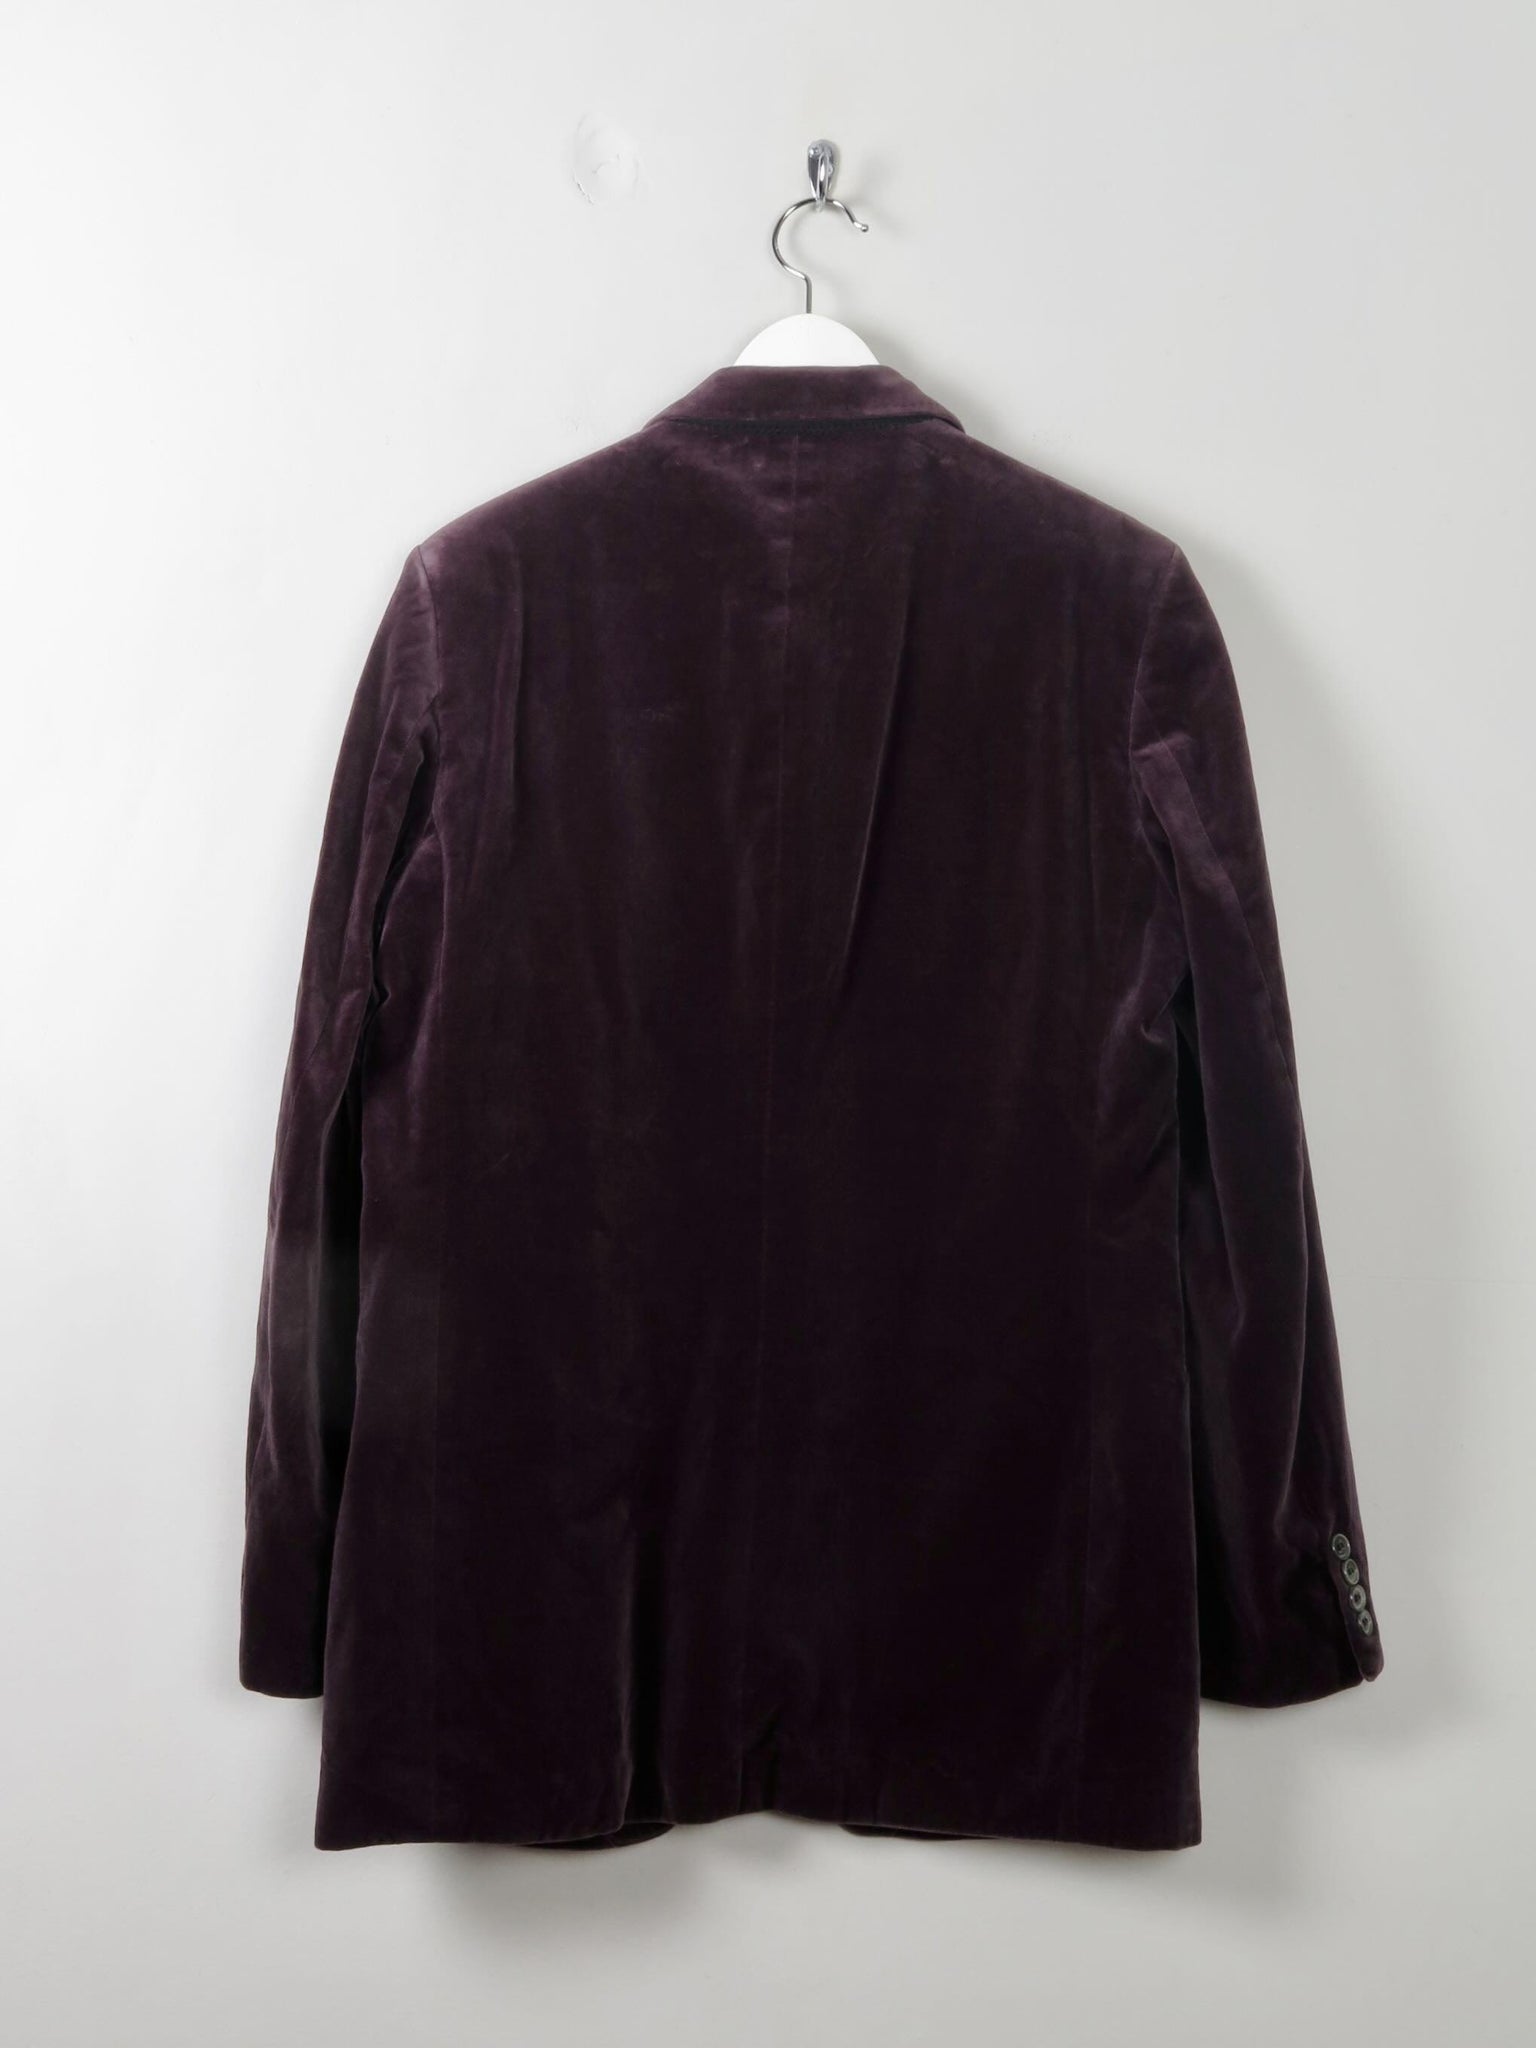 Men's Vintage Grape Velvet Jacket 38/40/S - The Harlequin